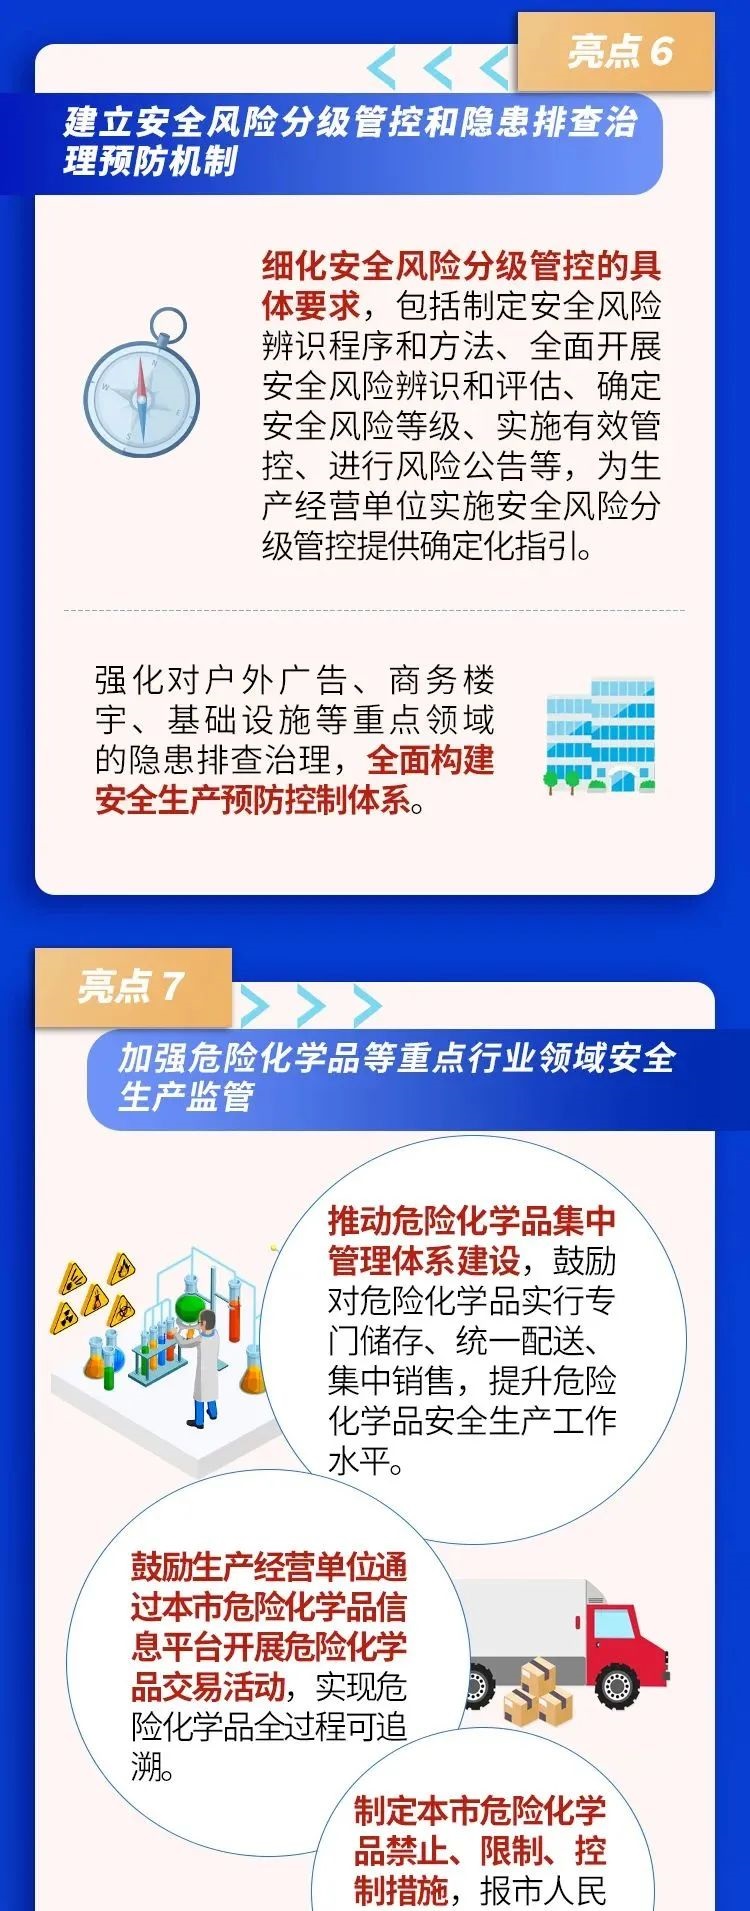 《北京市安全生产条例》10大亮点 6.jpg